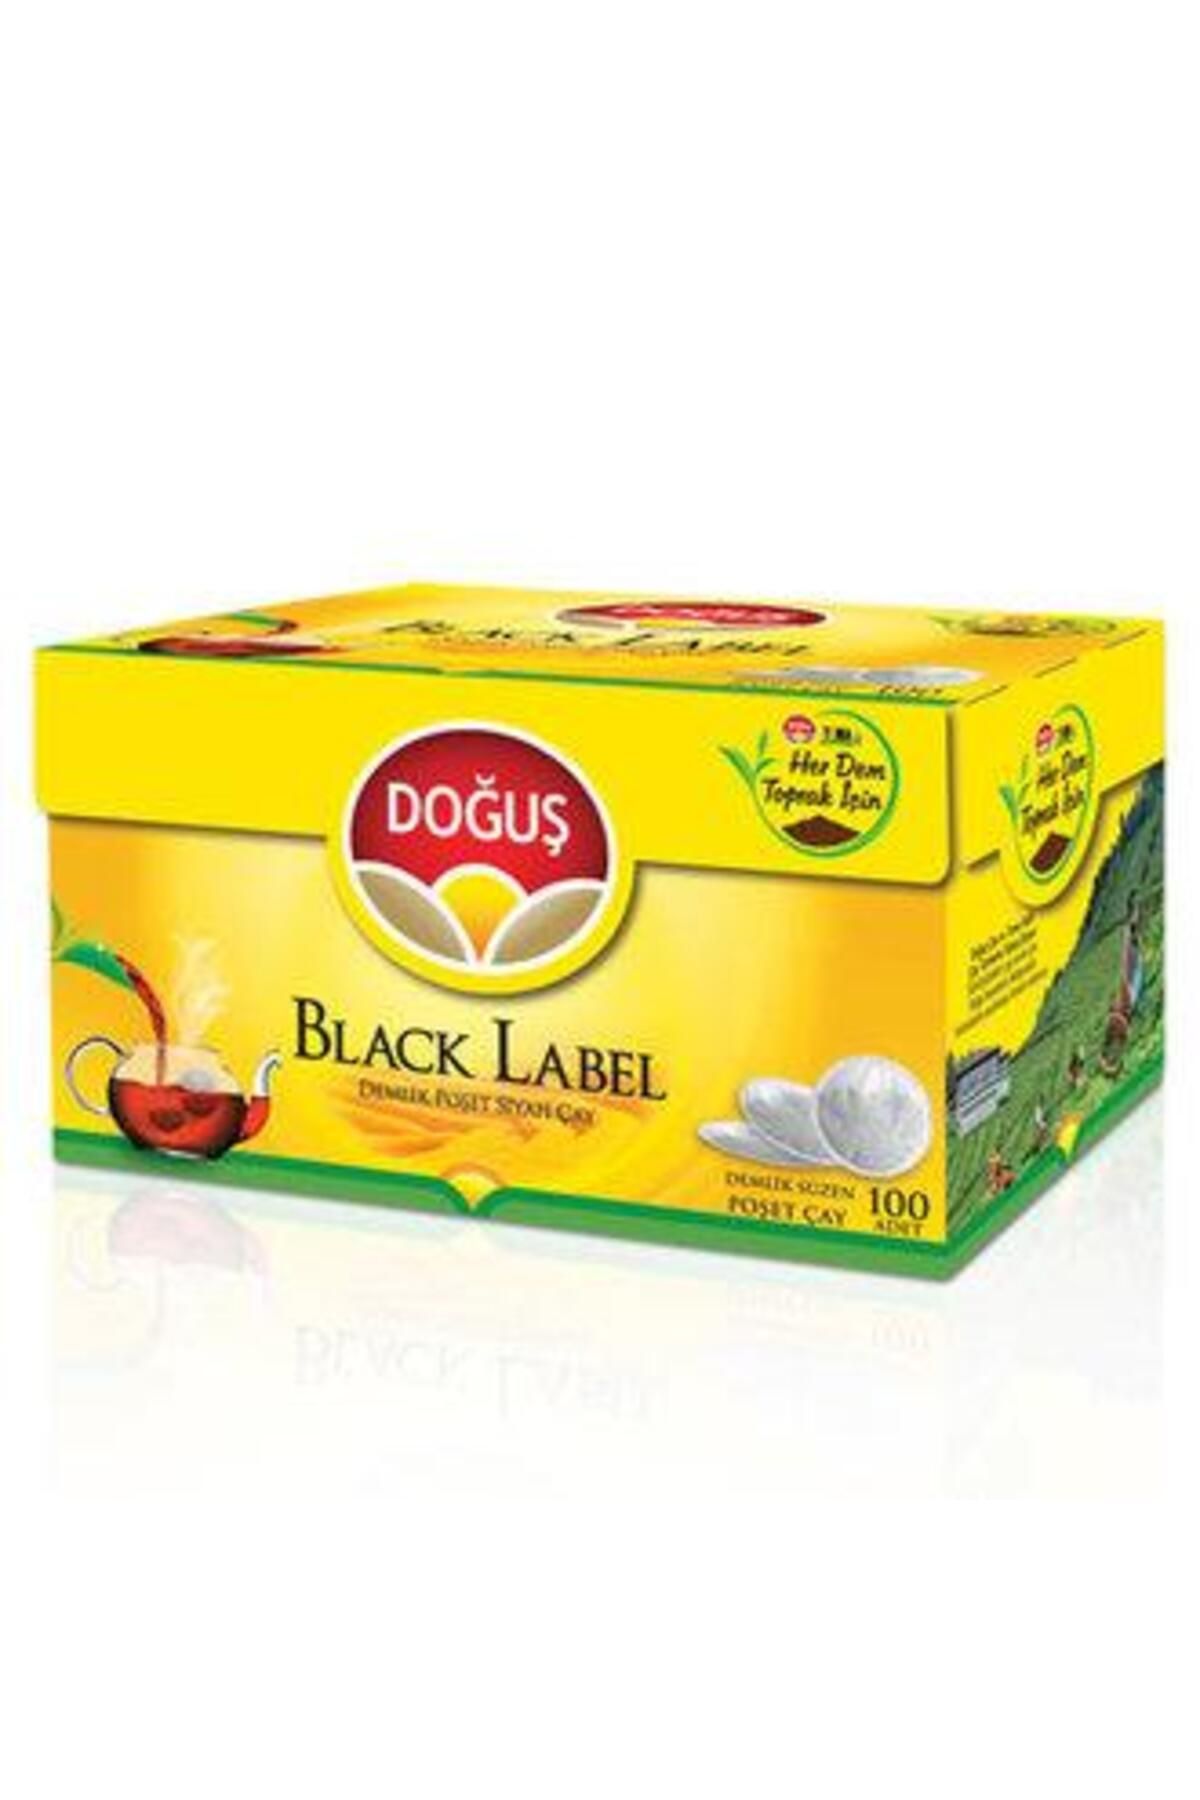 Doğuş Çay Doğuş Black Label Demlik 100'lü 320 GR. (4'lü)